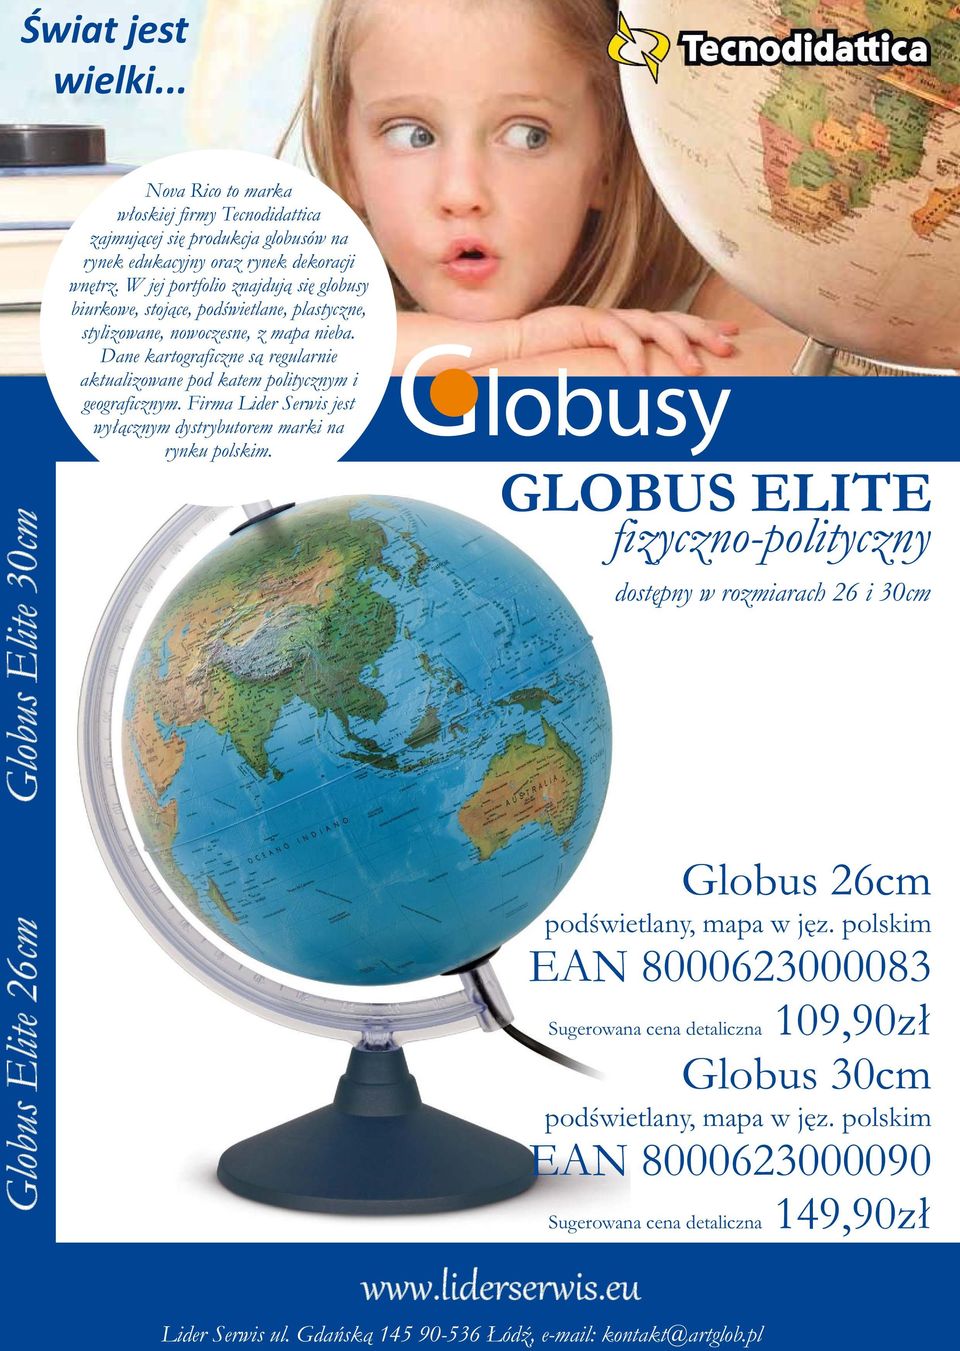 Globus 26cm EAN 8000623000083 Sugerowana cena